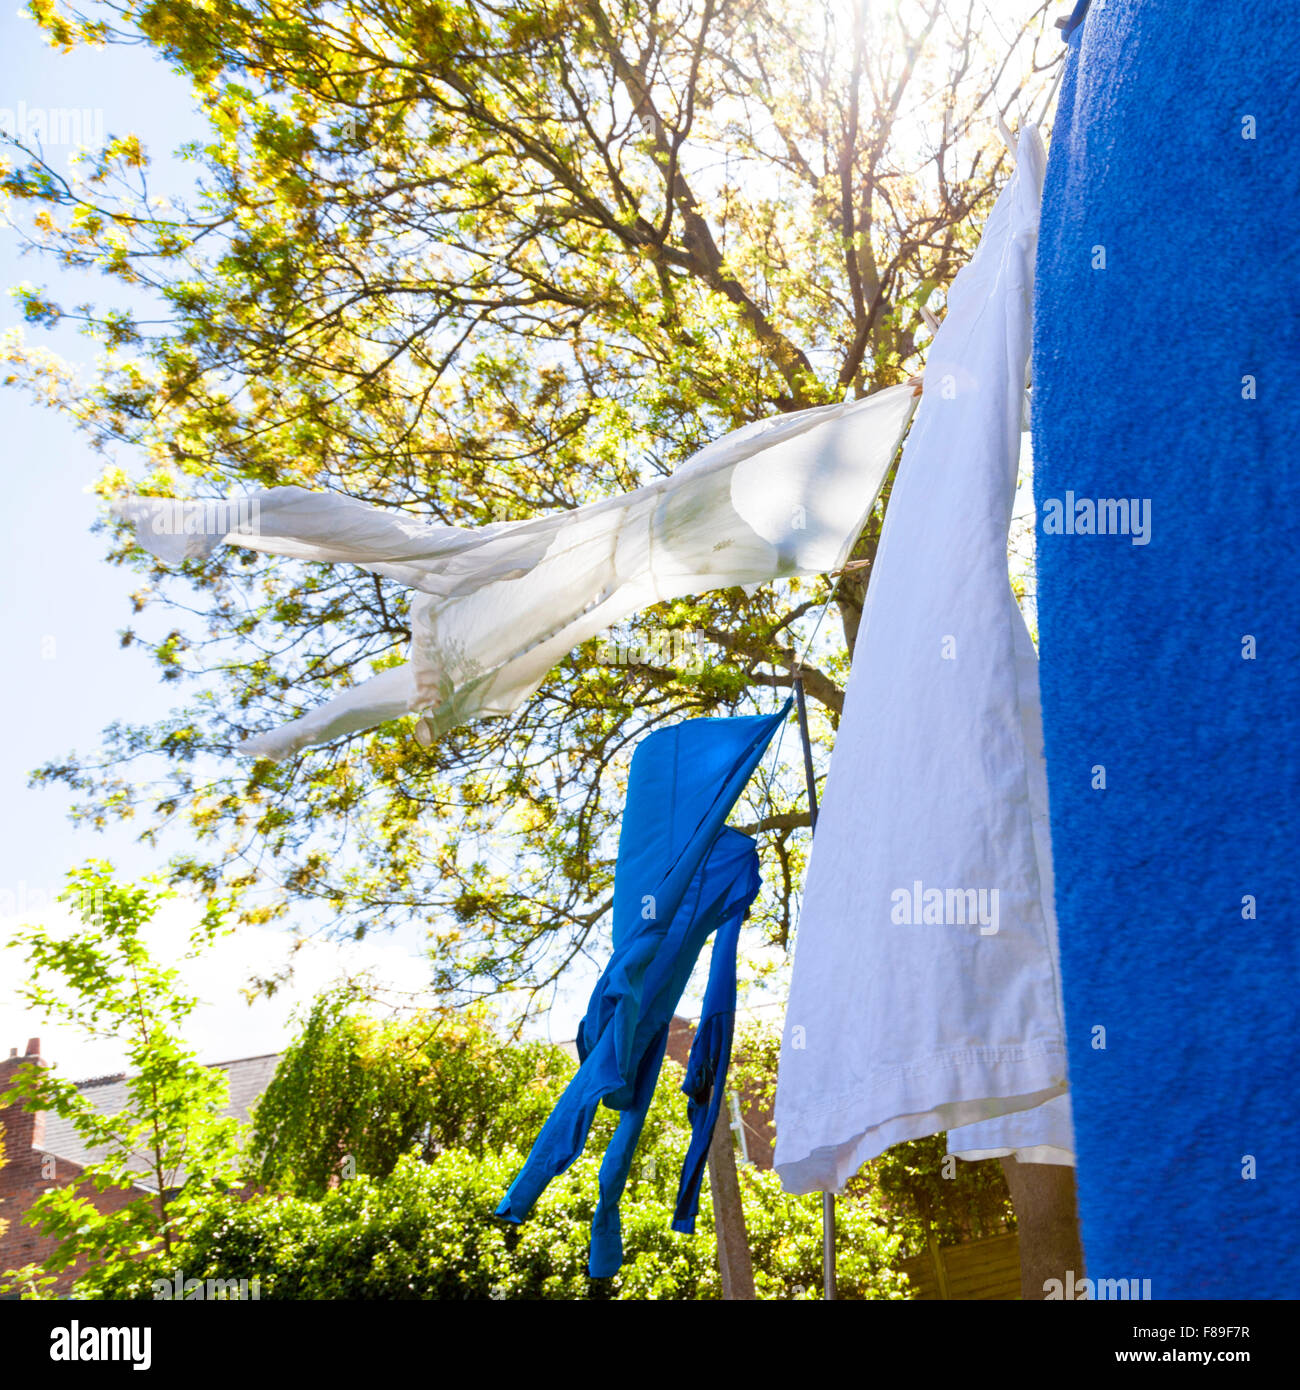 Le séchage des vêtements sur un lave-ligne dans un jardin, England, UK Banque D'Images